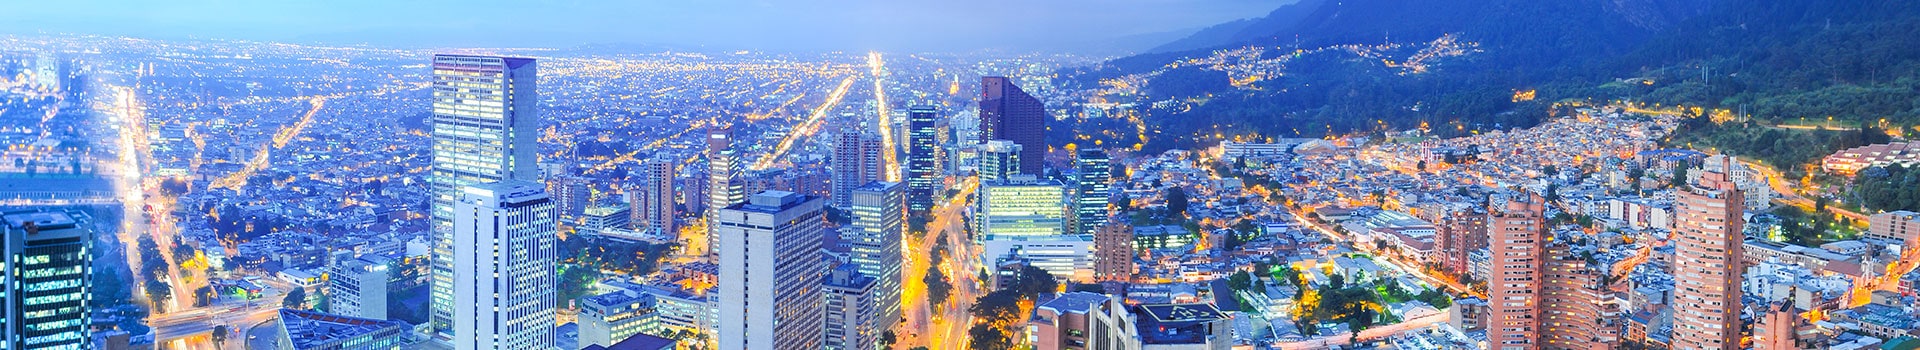 Meksikon kaupunki - Bogota